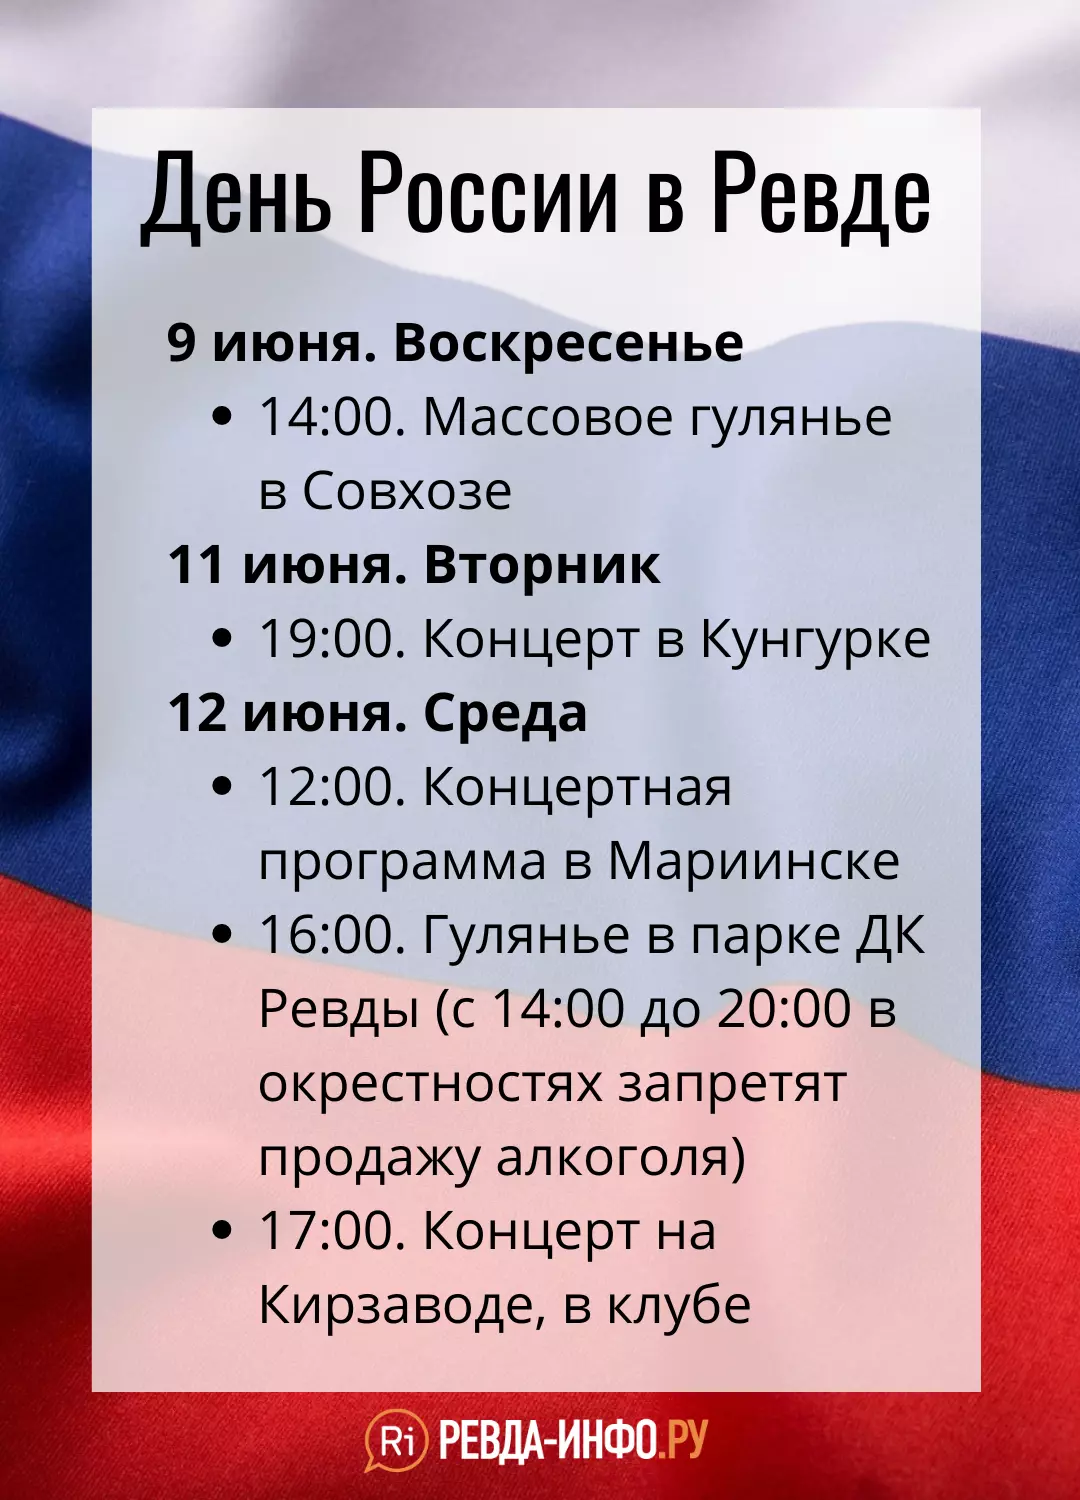 Как в Ревде отпразднуют День России: программа в одной картинке